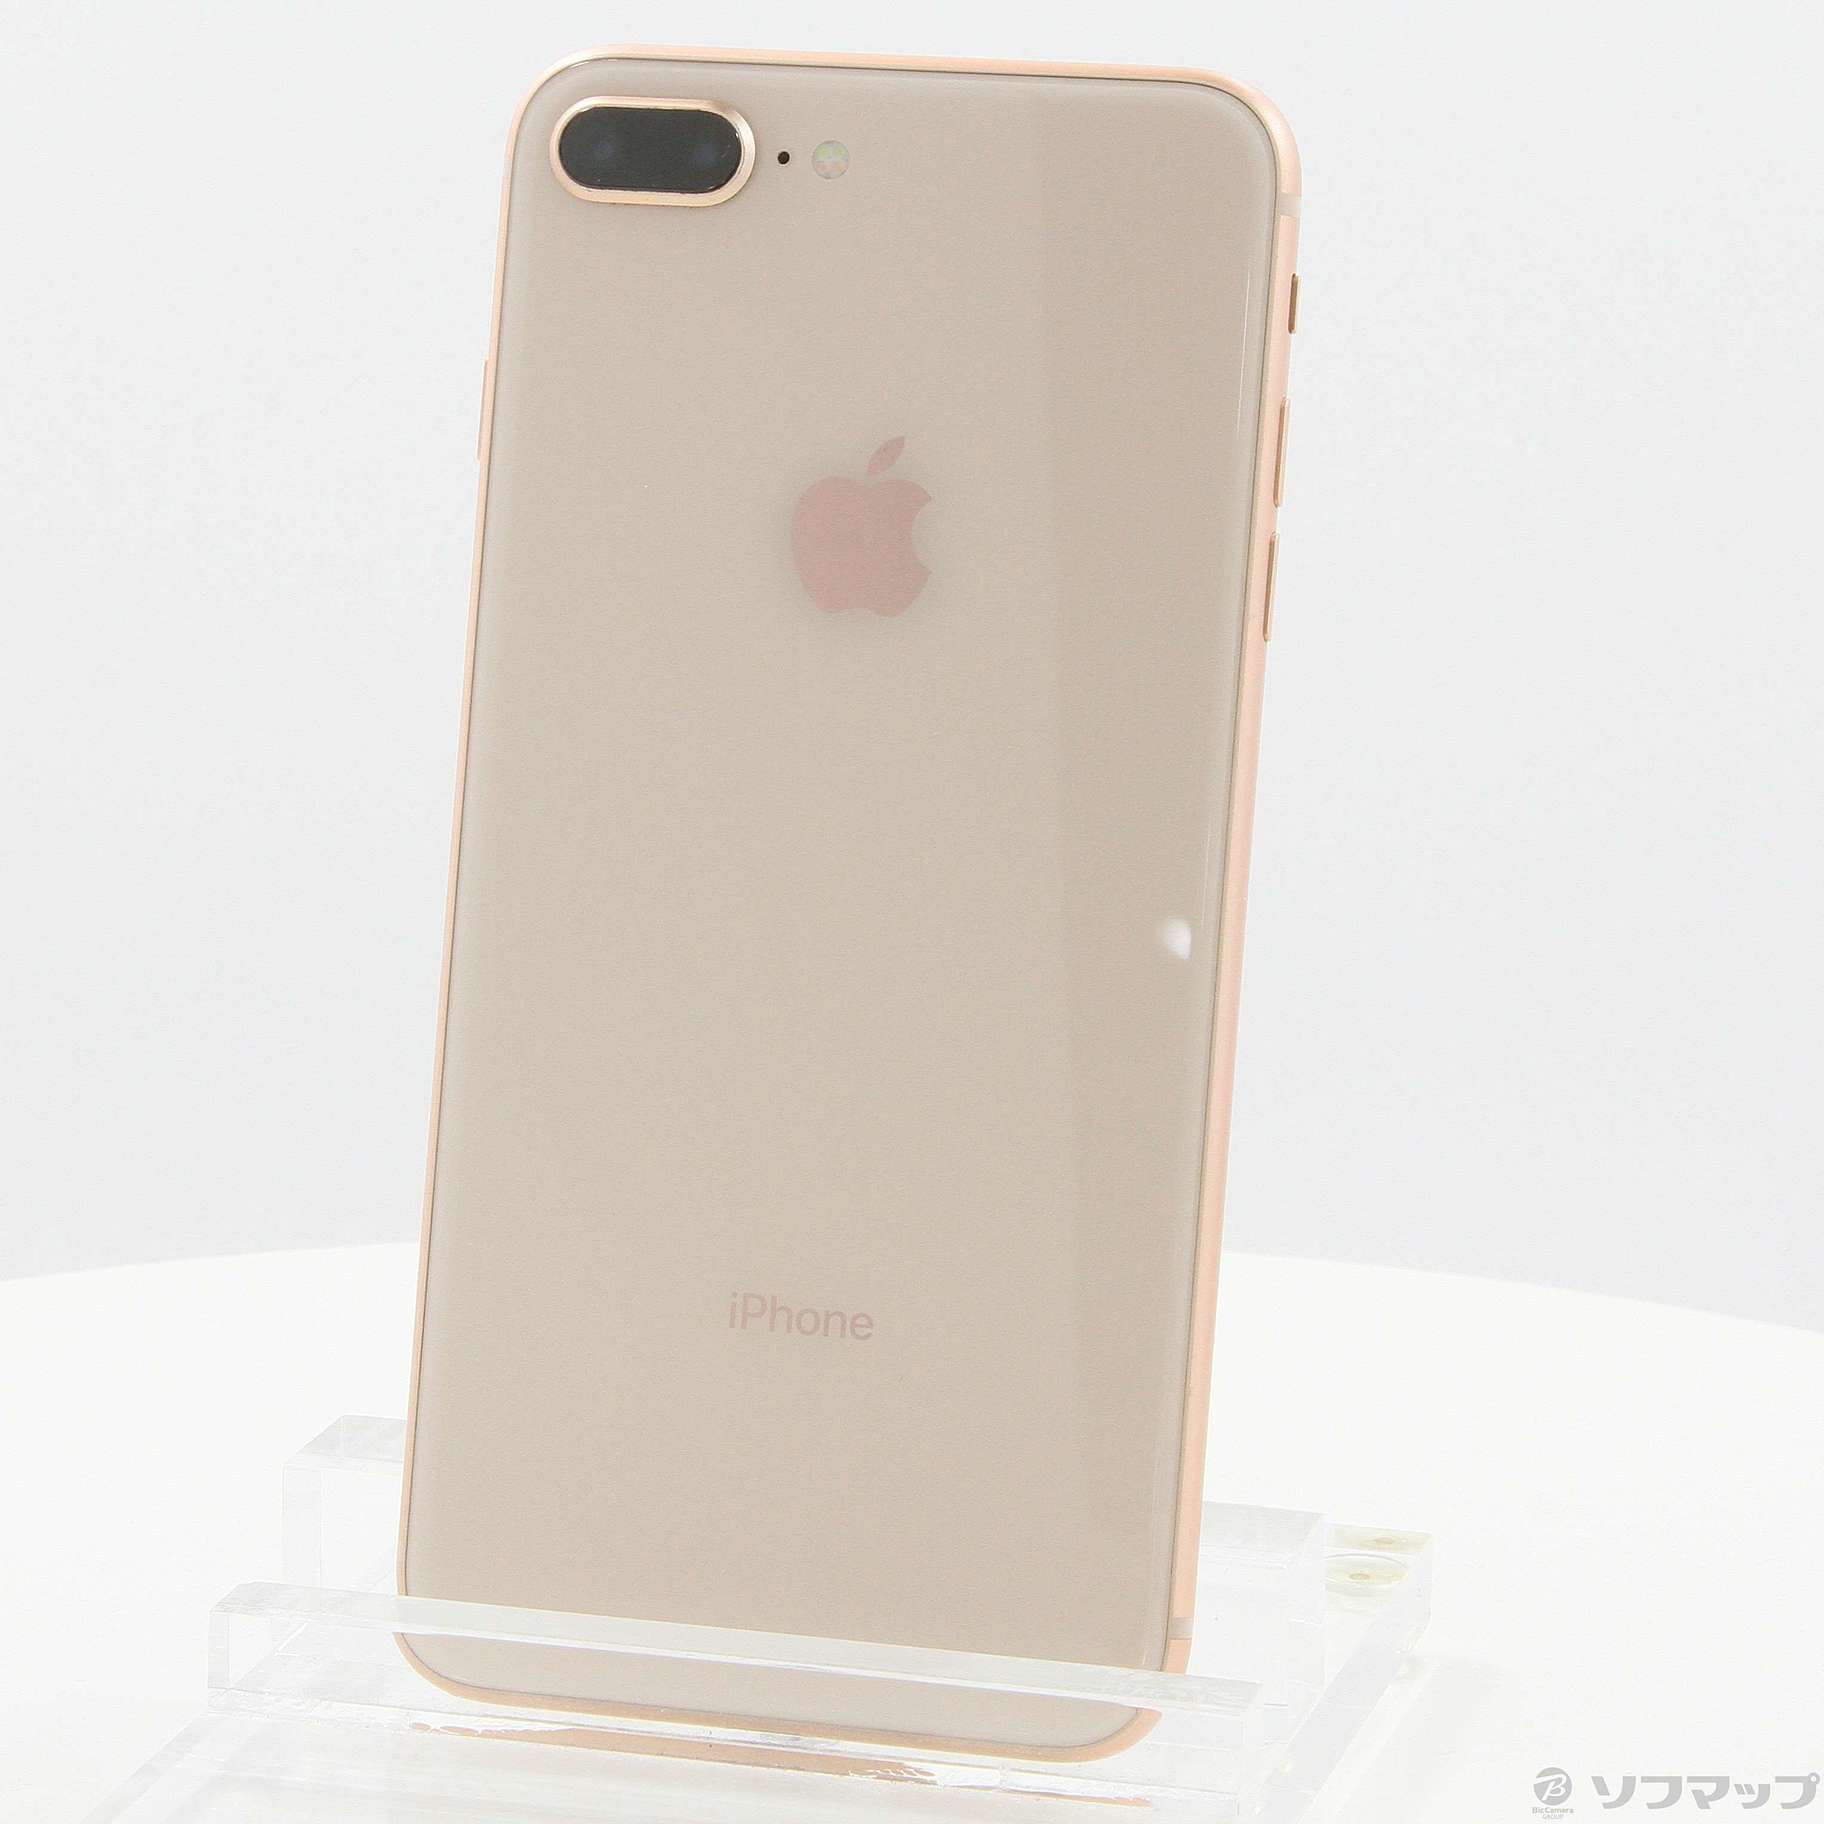 日本最大の iPhone 8 SIMフリー ゴールド 256 GB Softbank- ゴールド 